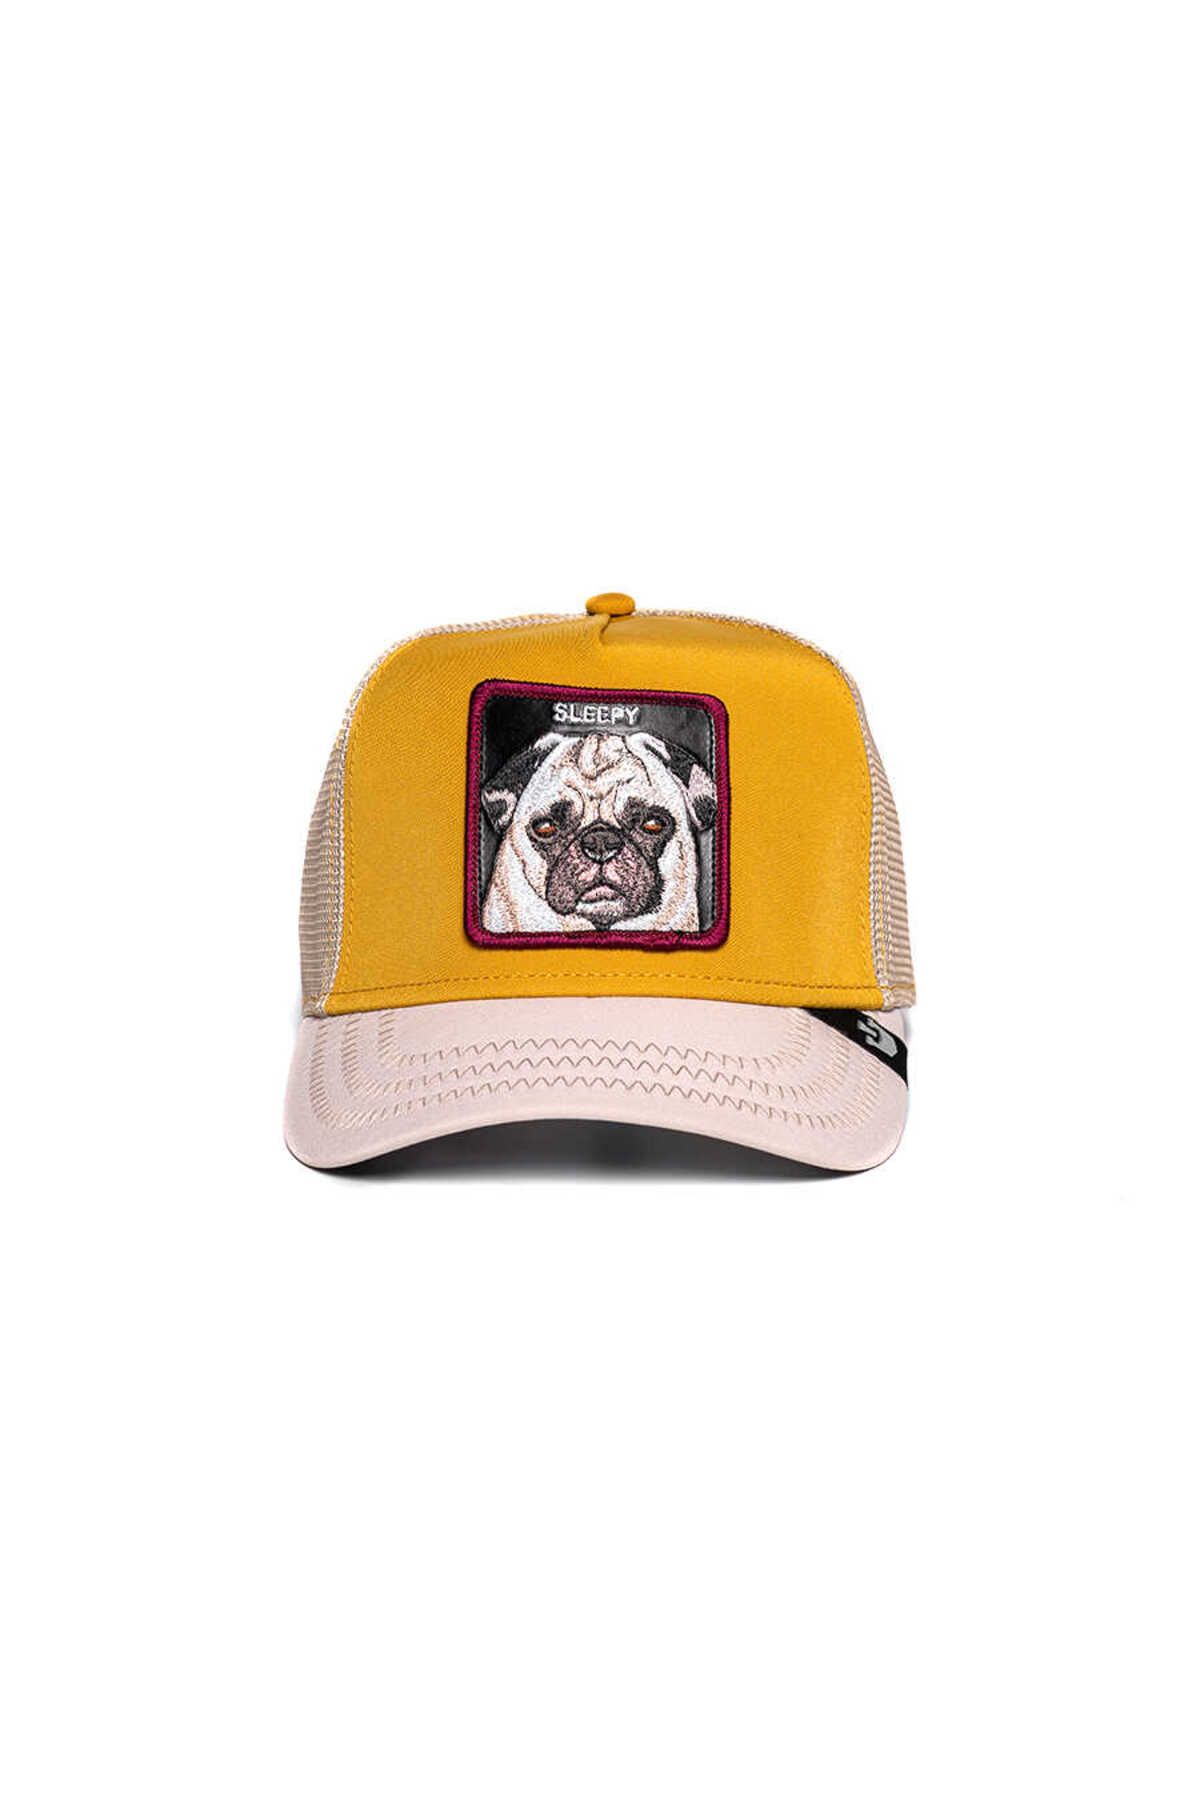 Goorin Bros Nap Life ( Pug Köpek Figürlü ) Şapka 101-0404 Sarı Standart